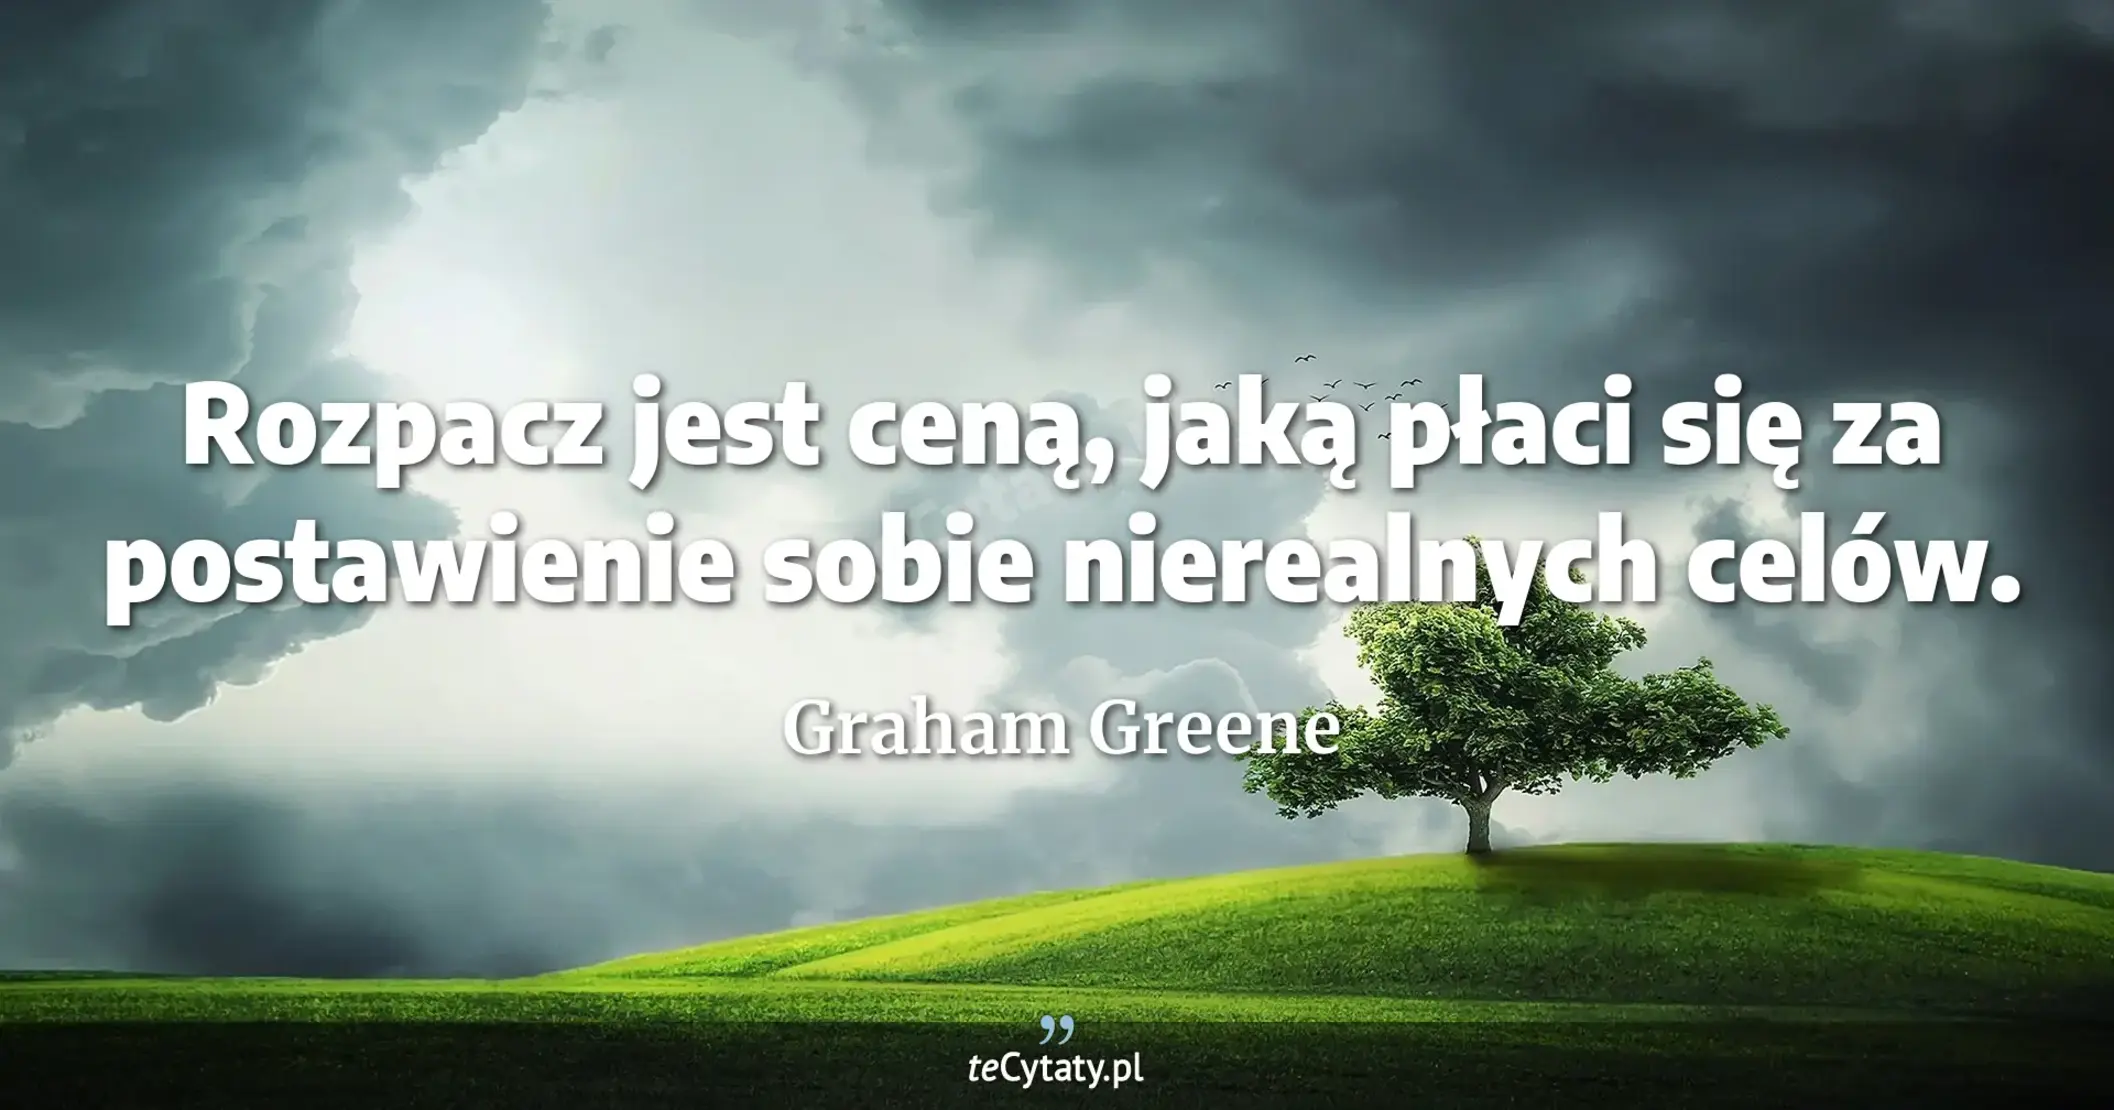 Rozpacz jest ceną, jaką płaci się za postawienie sobie nierealnych celów. - Graham Greene